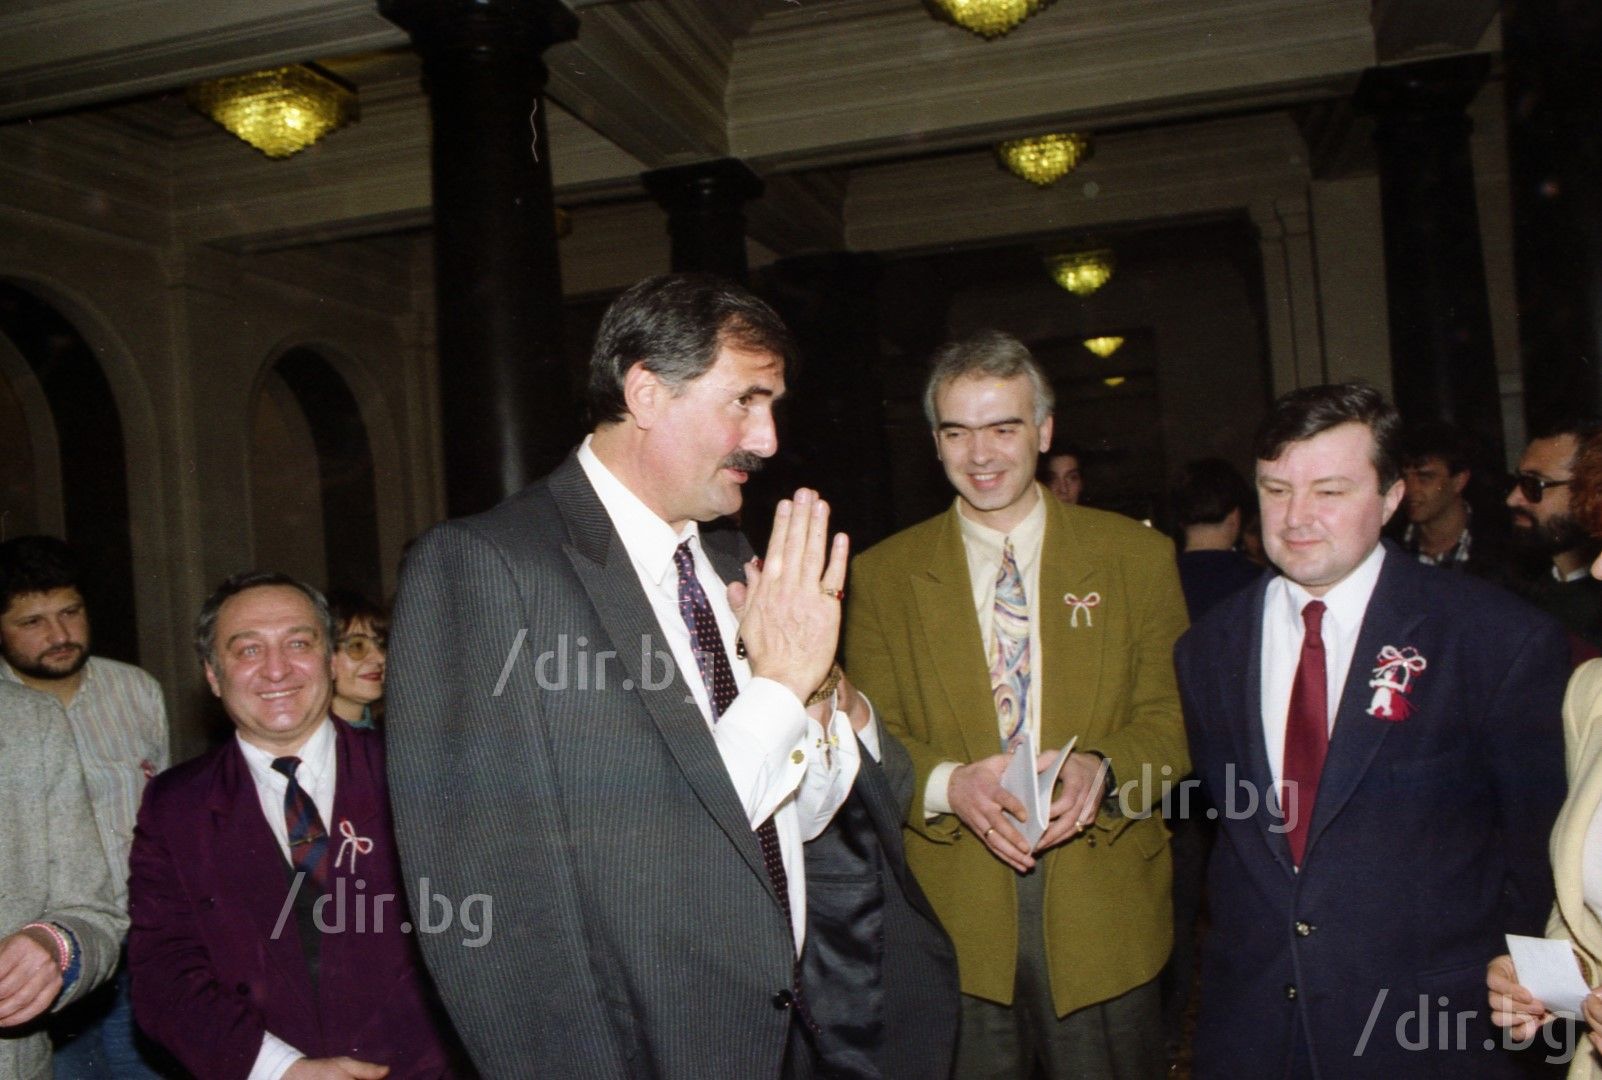 Жорж Ганчев в компанията на Яшо Минков и Георги Дилков-Лорда в кулоарите на Народното събрание 